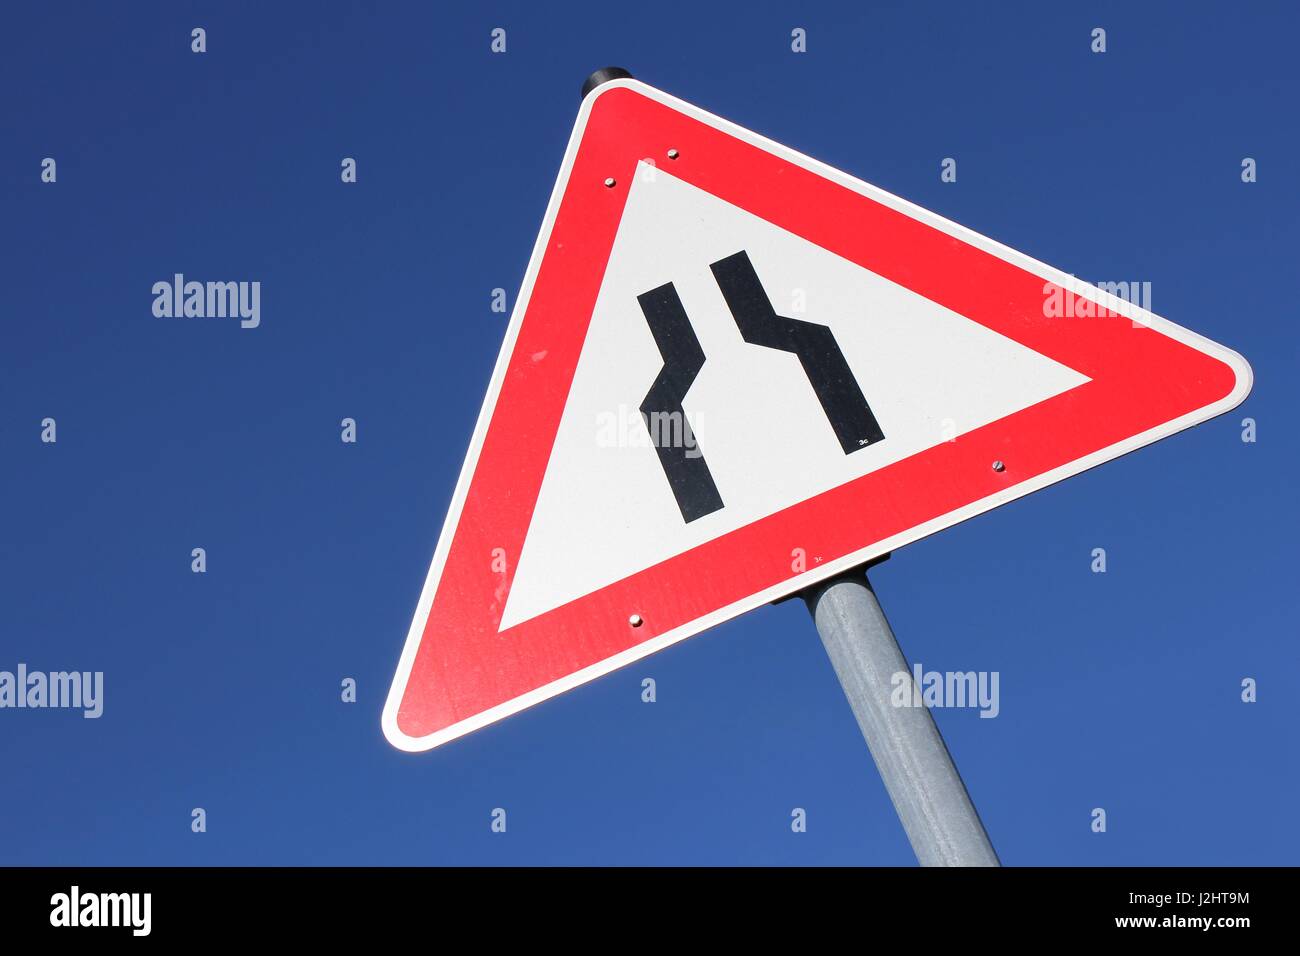 Il tedesco cartello stradale: la strada si restringe, entrambi i lati, stretto collo di bottiglia a livello di sito in costruzione, lavori stradali, avvertimento, triangolare Foto Stock